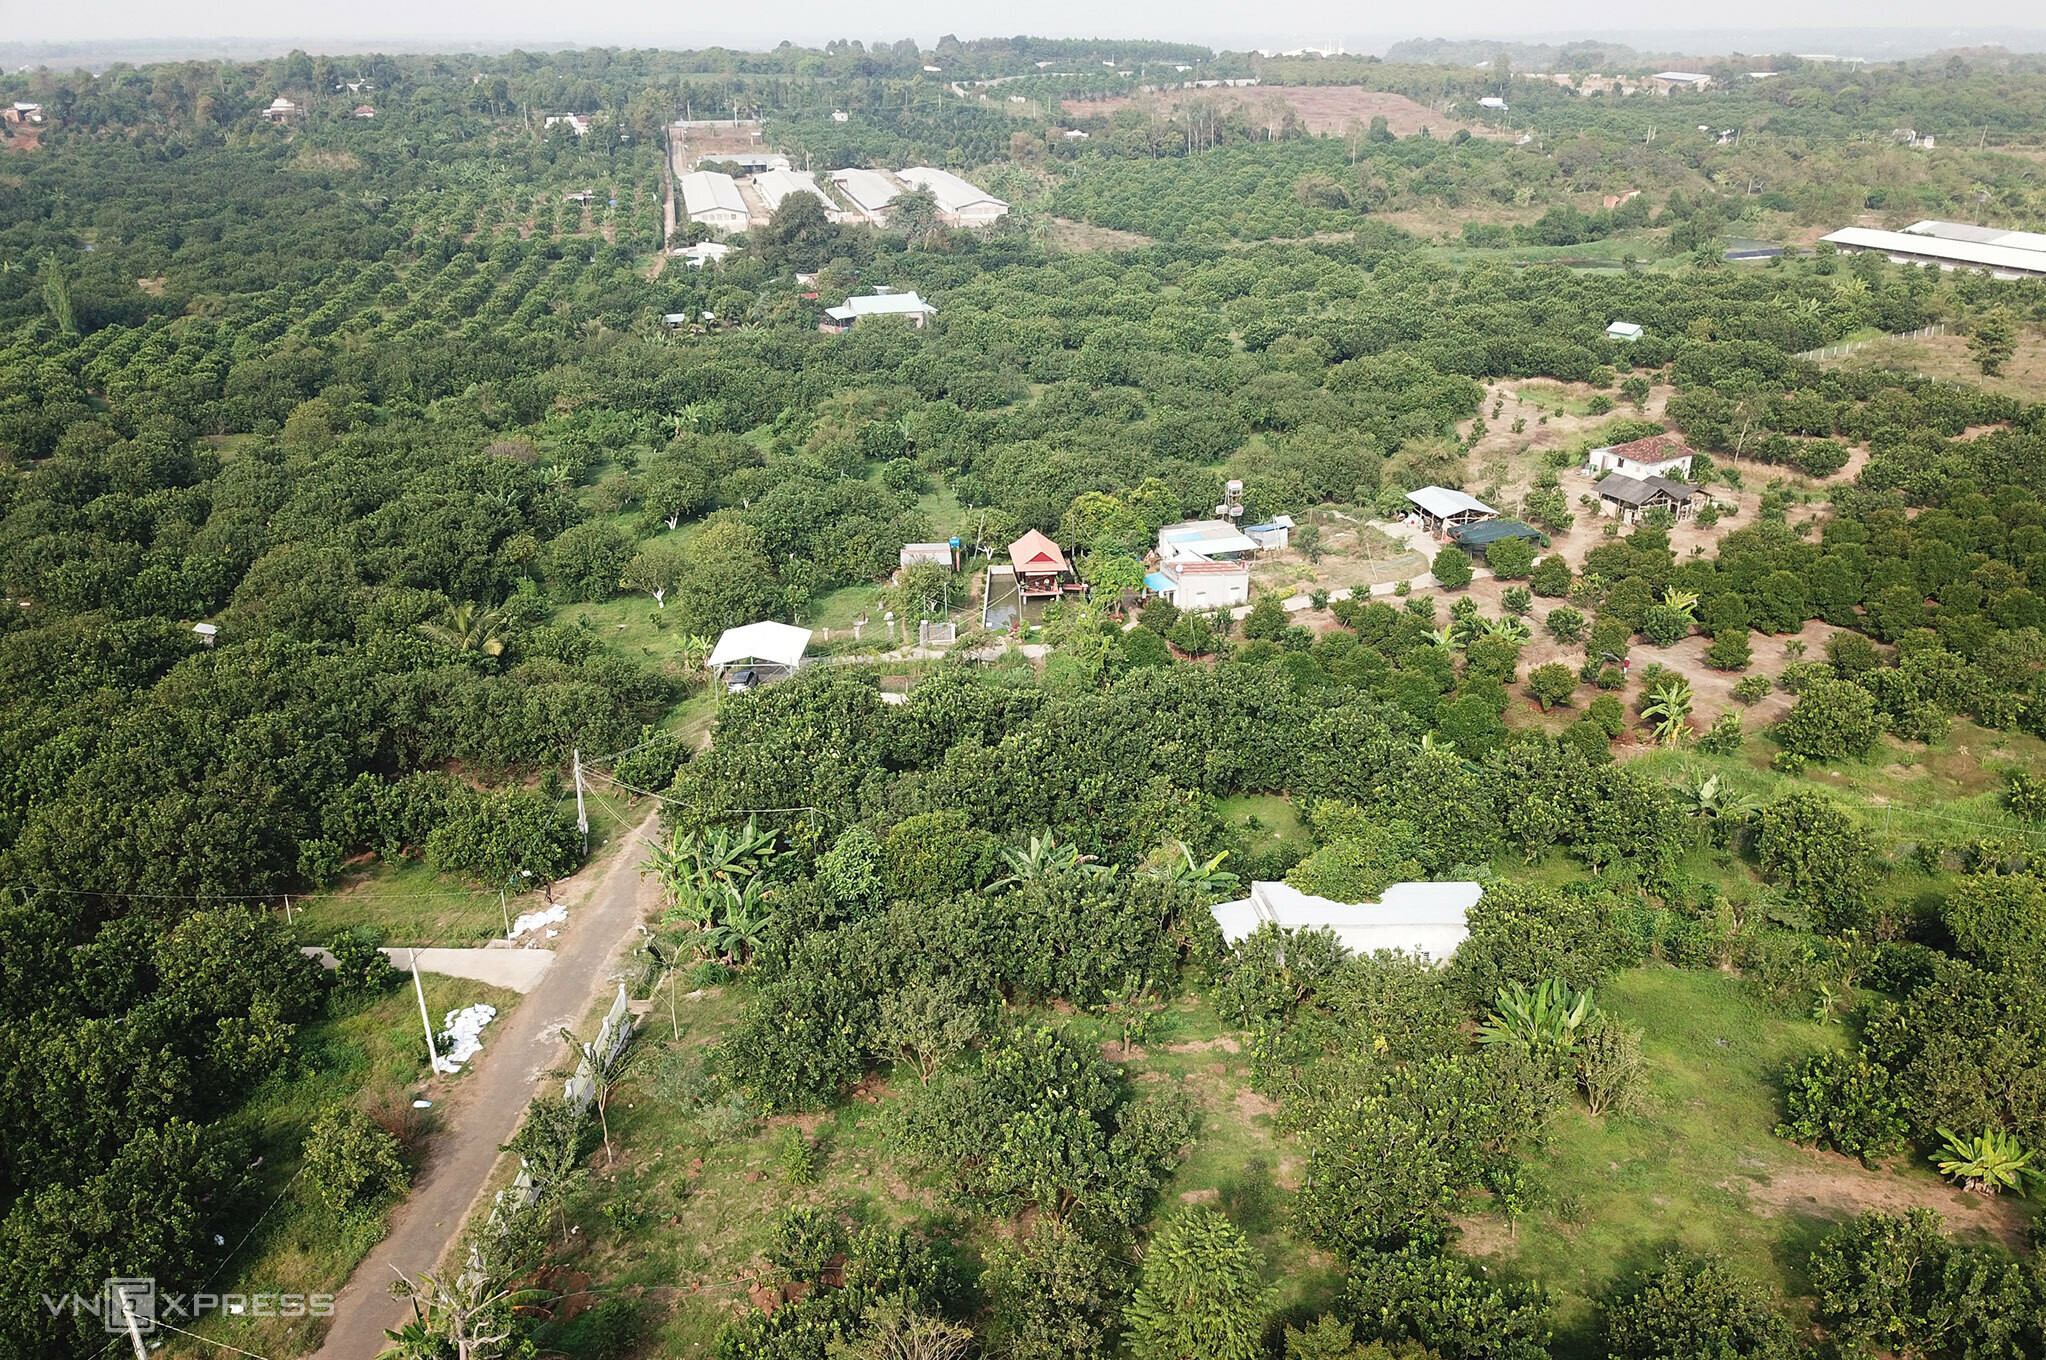 Xã Sông Xoài (thị xã Phú Mỹ, tỉnh Bà Rịa - Vũng Tàu) có khoảng 120 hộ trồng bưởi da xanh, với diện tích khoảng 160 ha. Bưởi ở địa phương này có vị ngọt thanh, tép bưởi to, khô ráo nên được thị trường ưa chuộng.